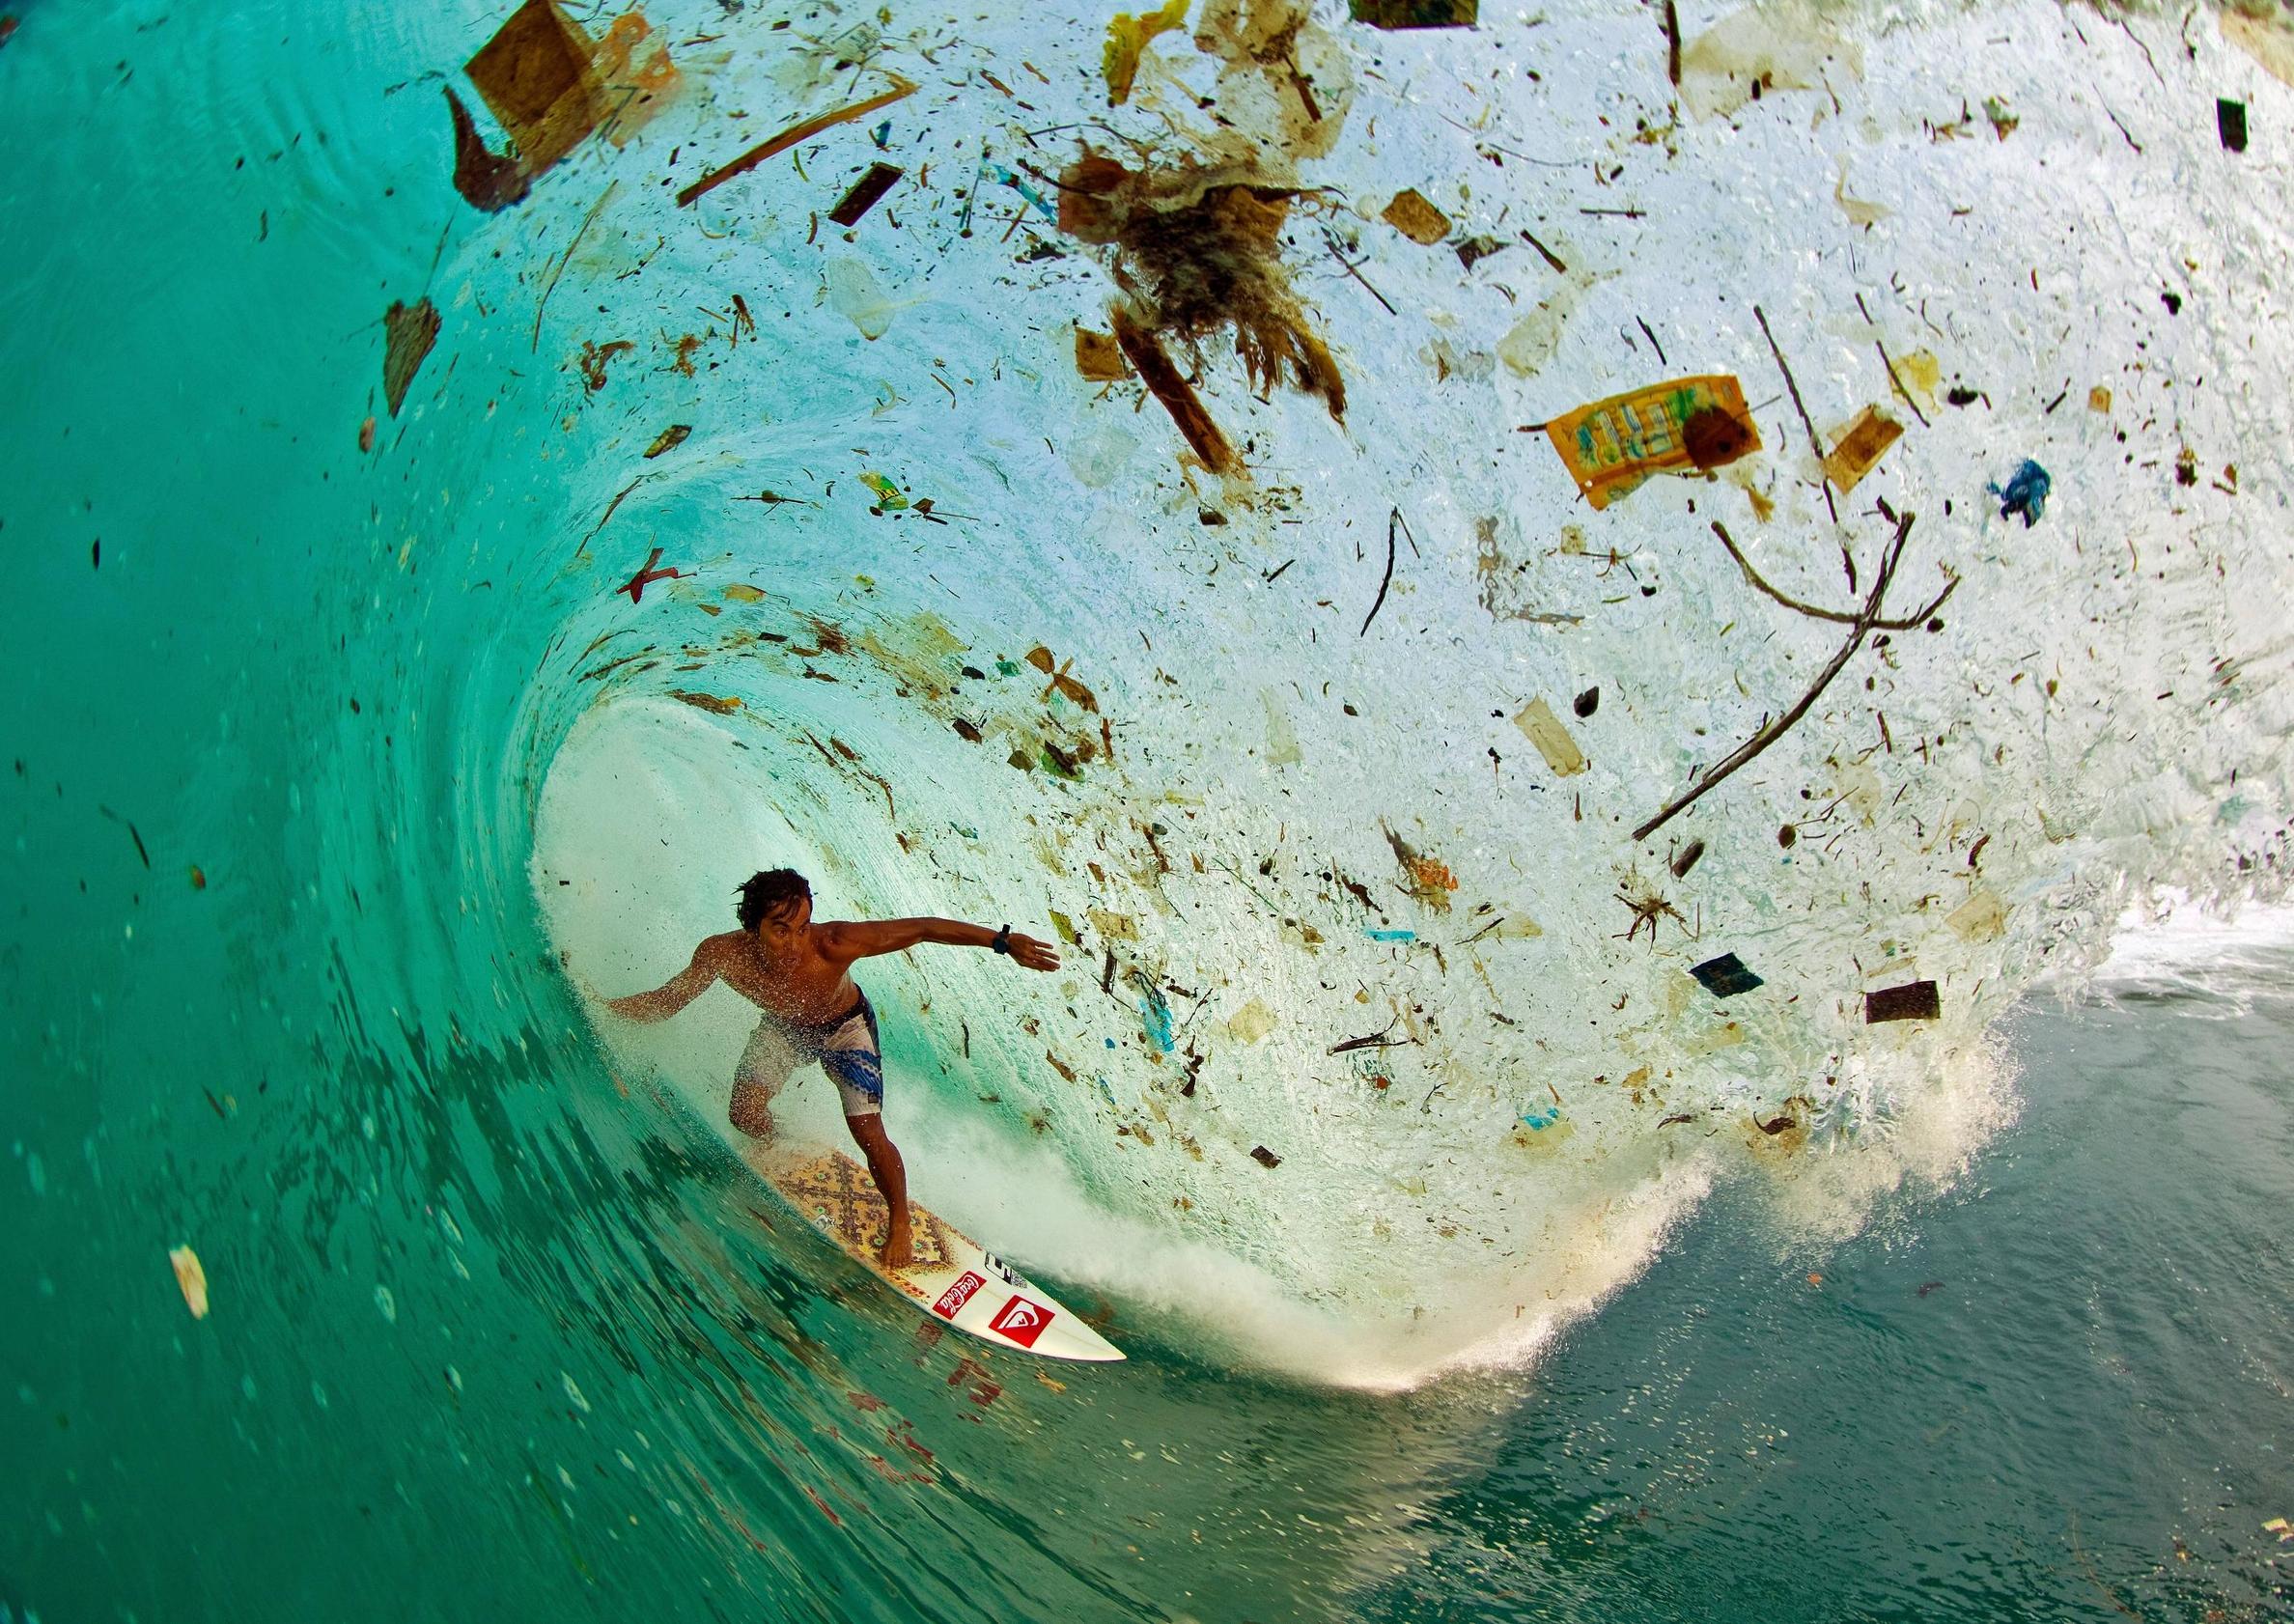 直击全球最大的垃圾场,不在大陆而在海洋,面积有4个日本的大小